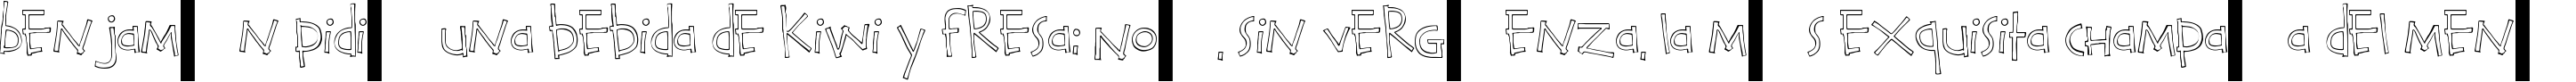 Пример написания шрифтом Calvin and Hobbes Outline текста на испанском